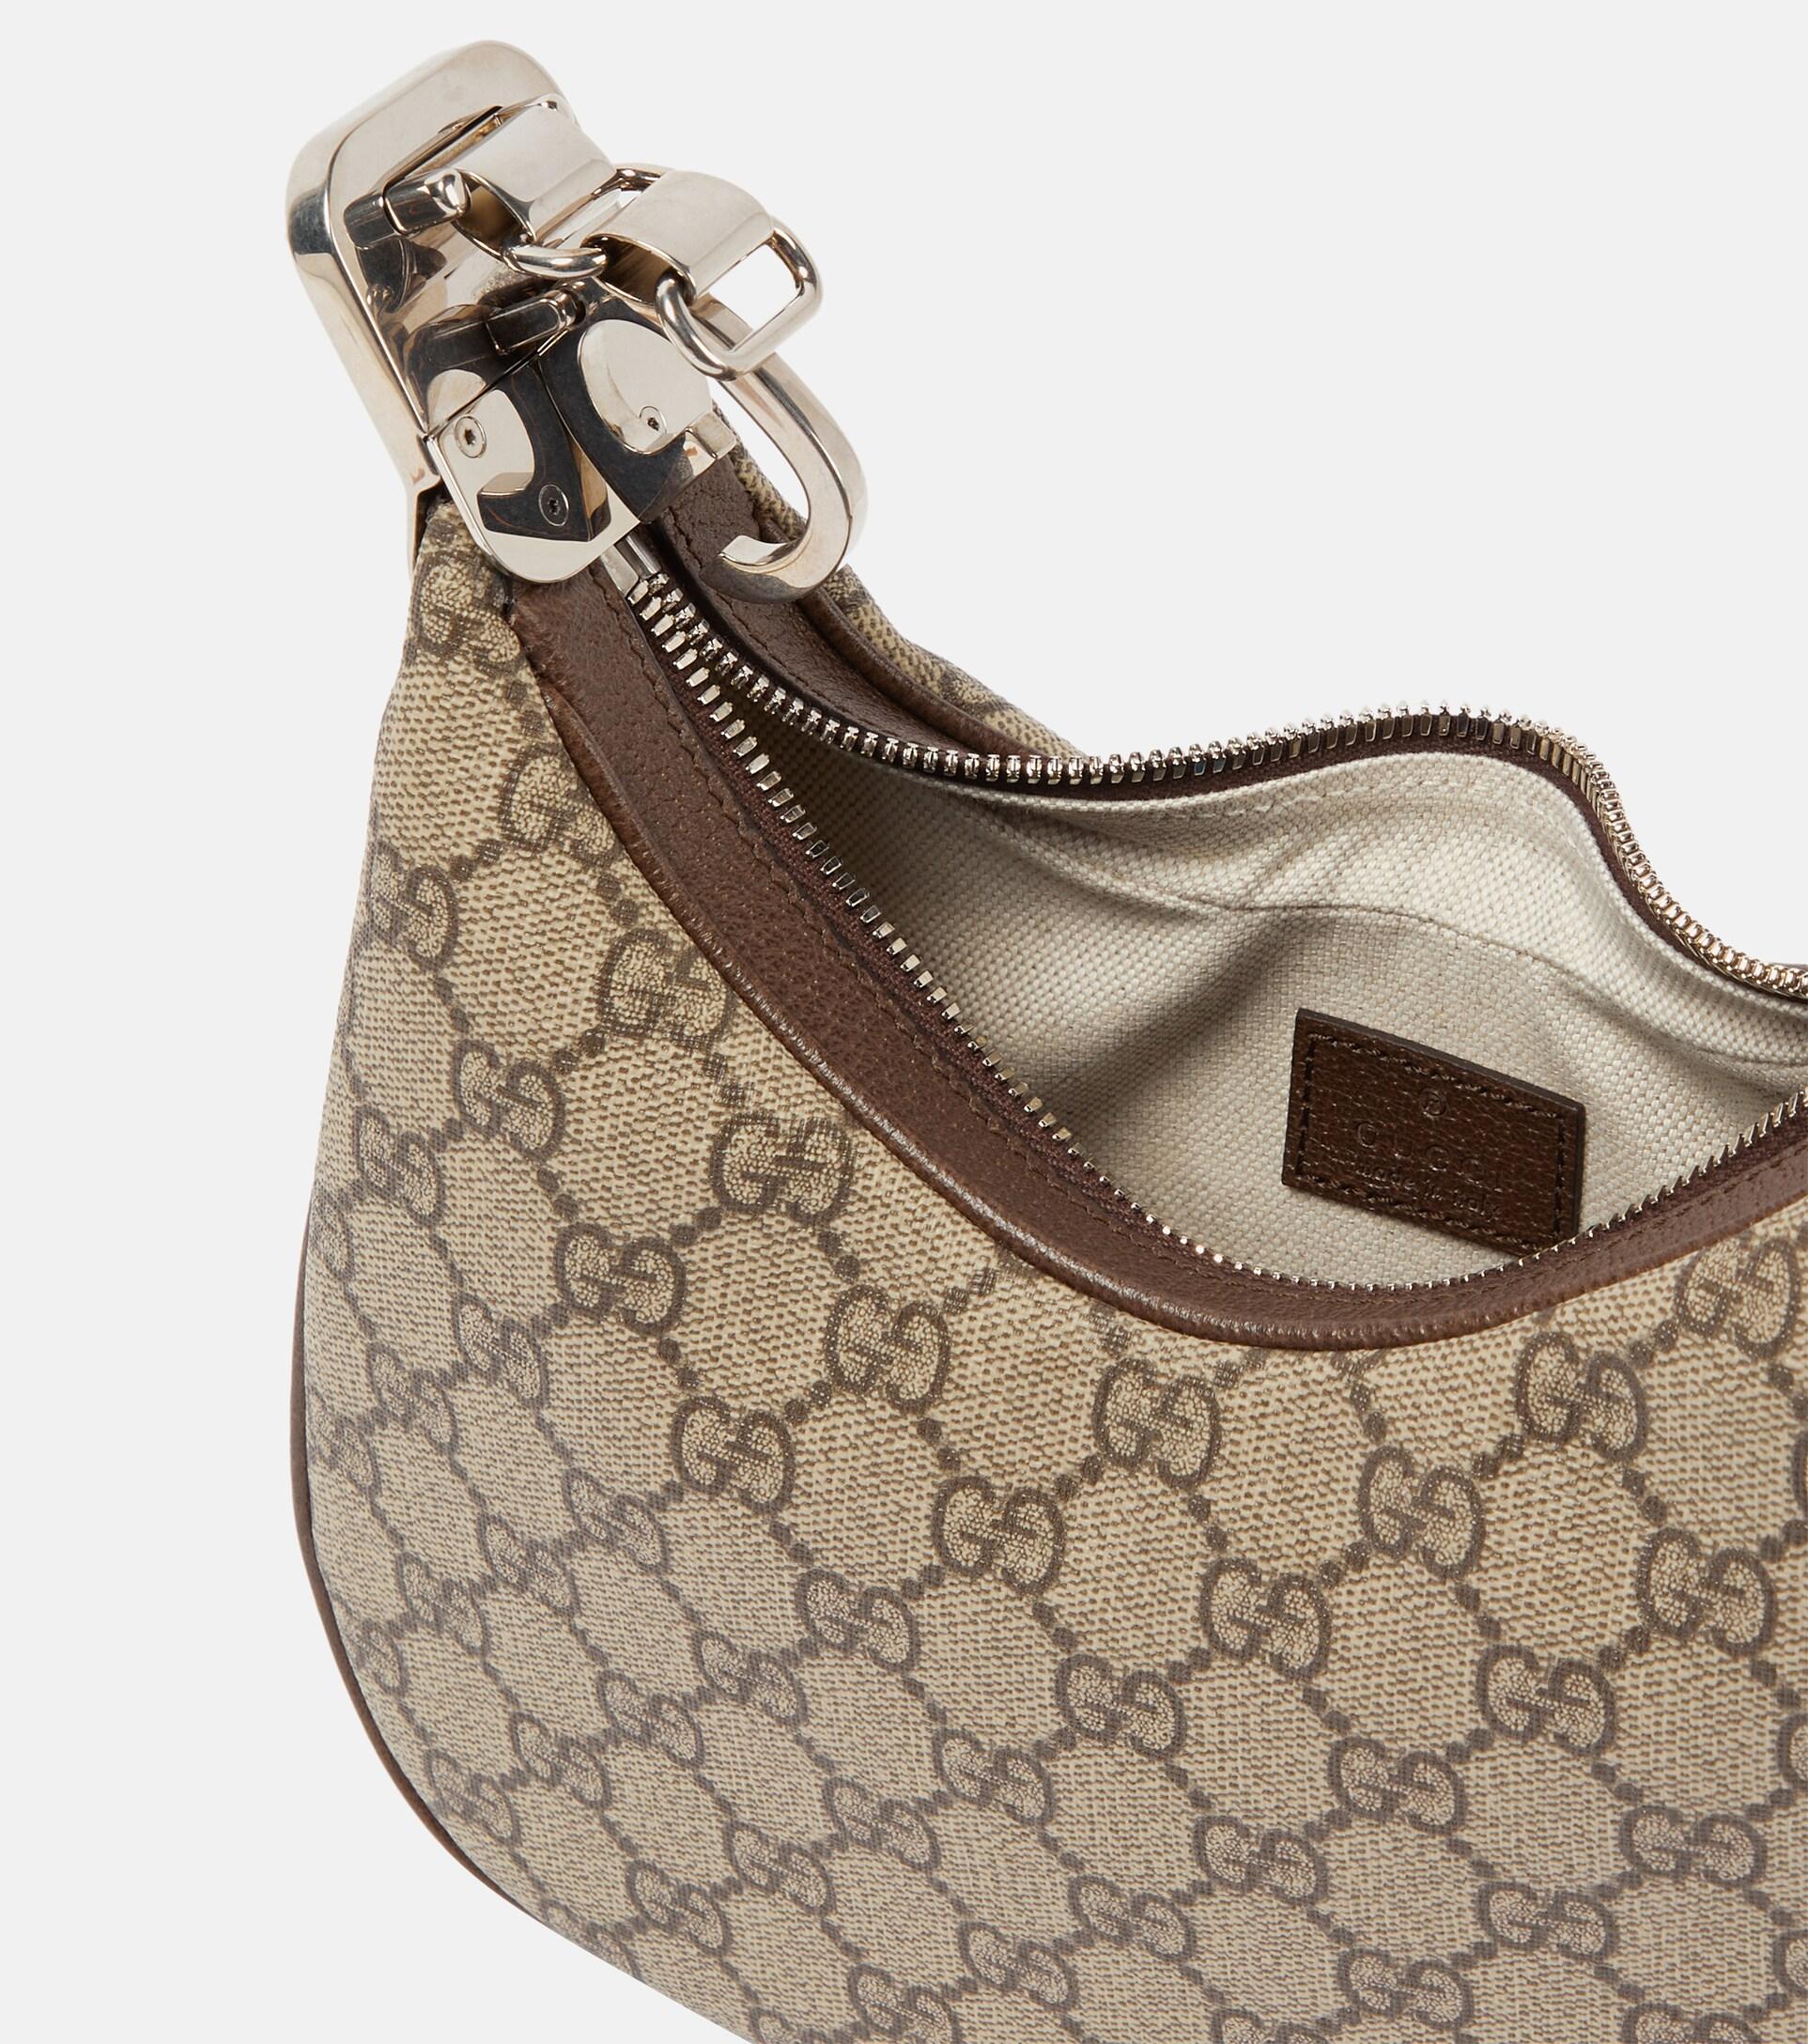 Gucci Attache Small Shoulder Bag in Multicoloured - Gucci